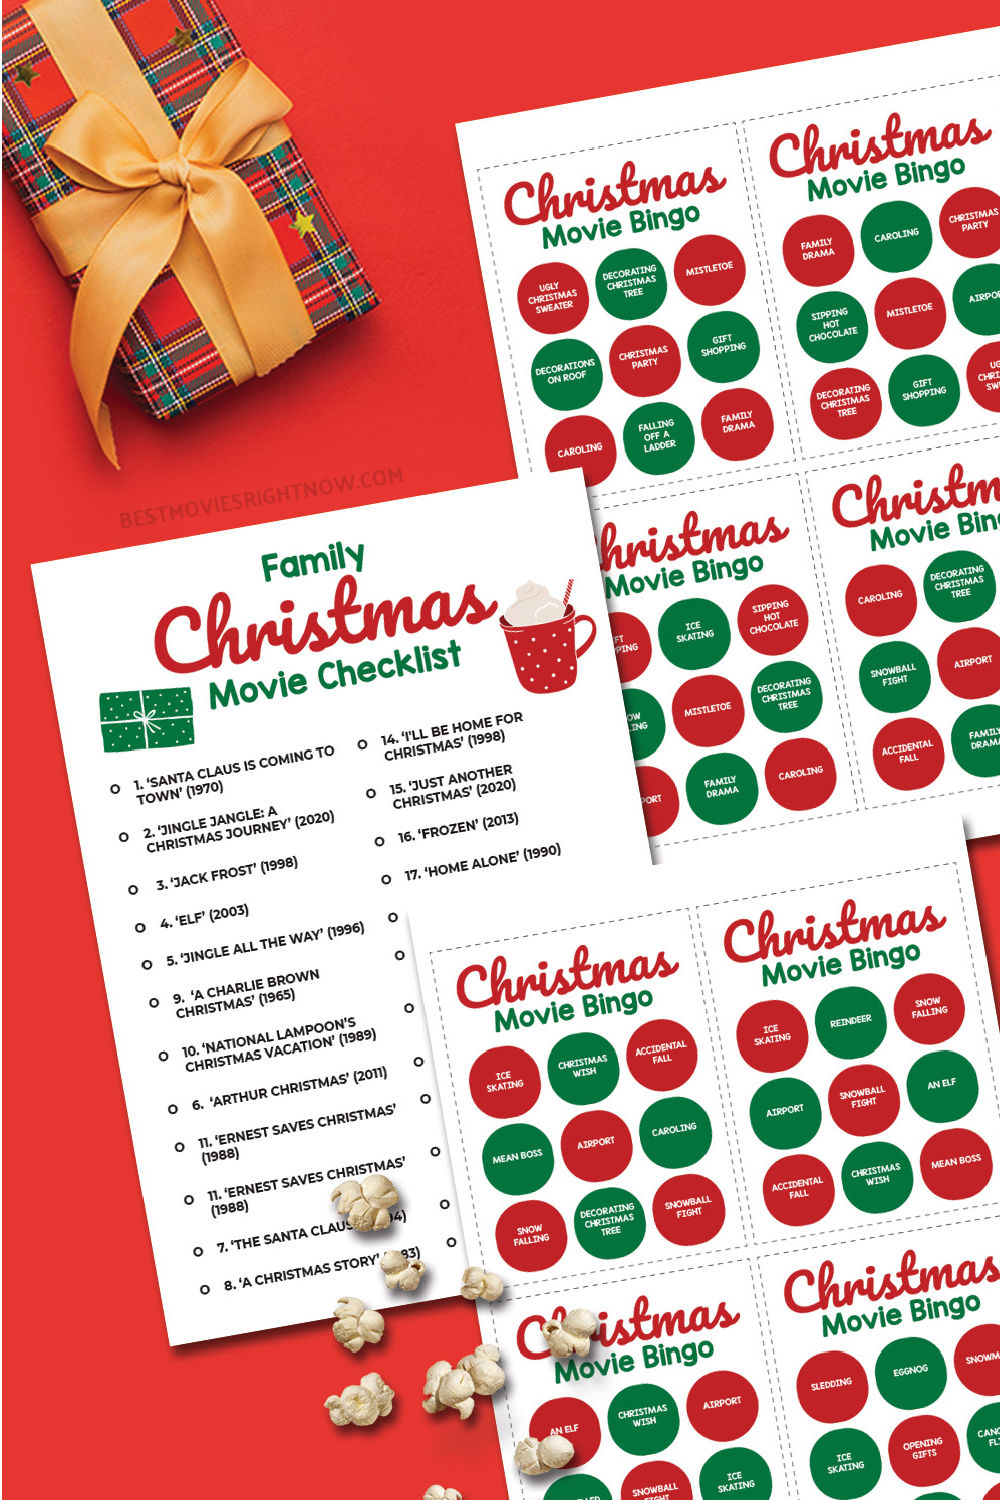 Family Christmas Movie Checklist & Christmas Movie Bingo pin image